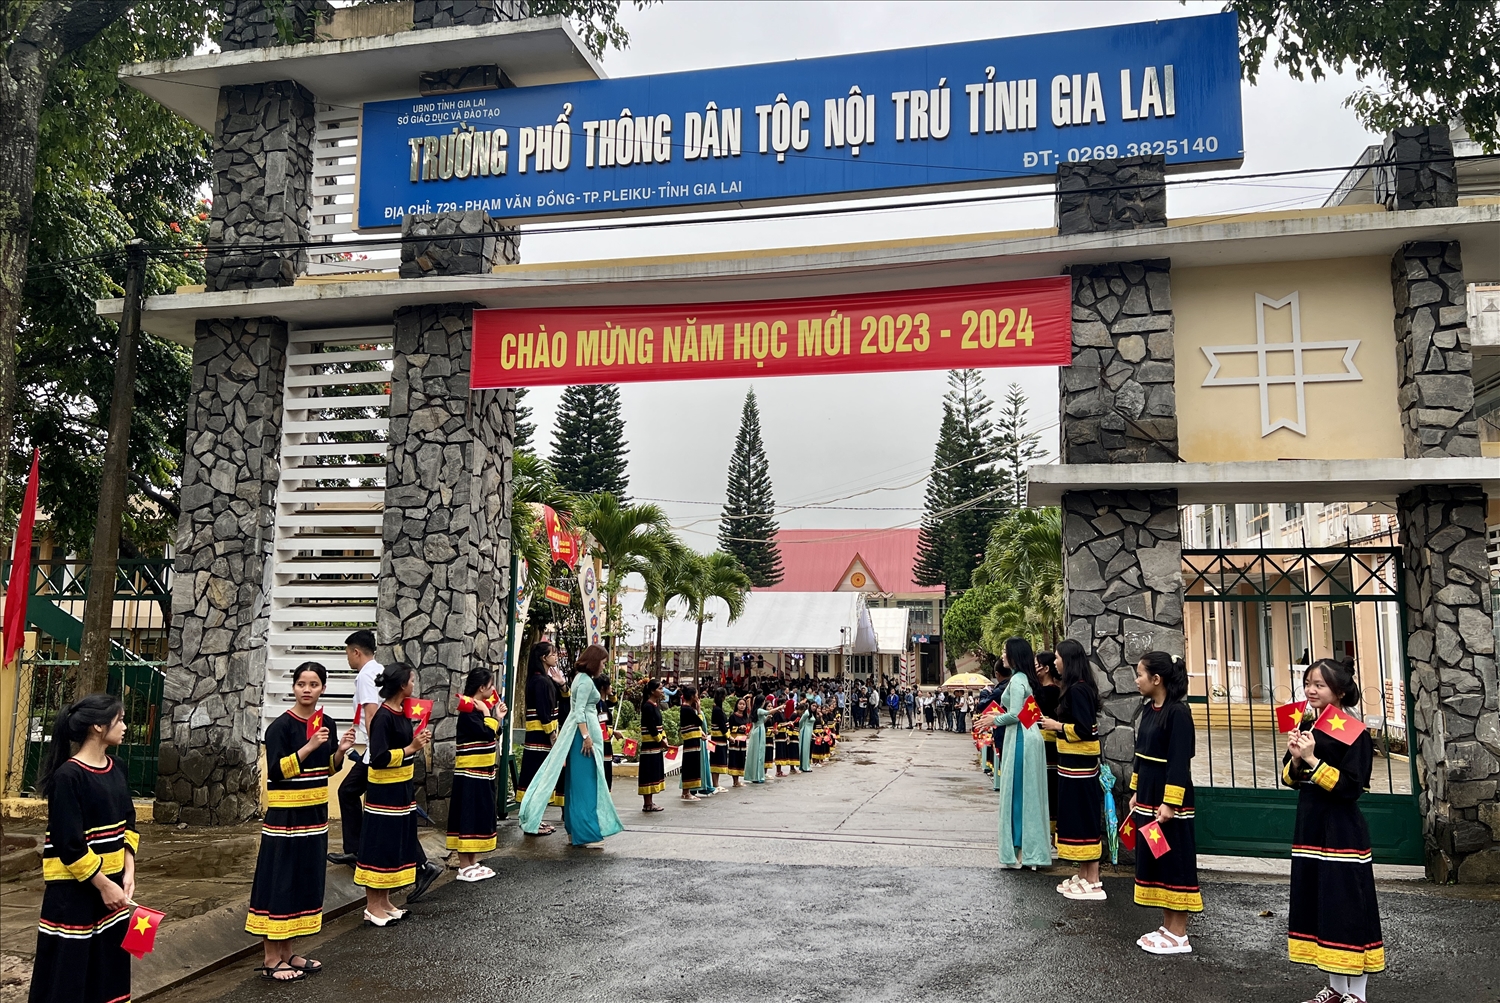 Trường PTDTNT tỉnh Gia Lai hân hoan chào đón năm học mới 2023 - 2024